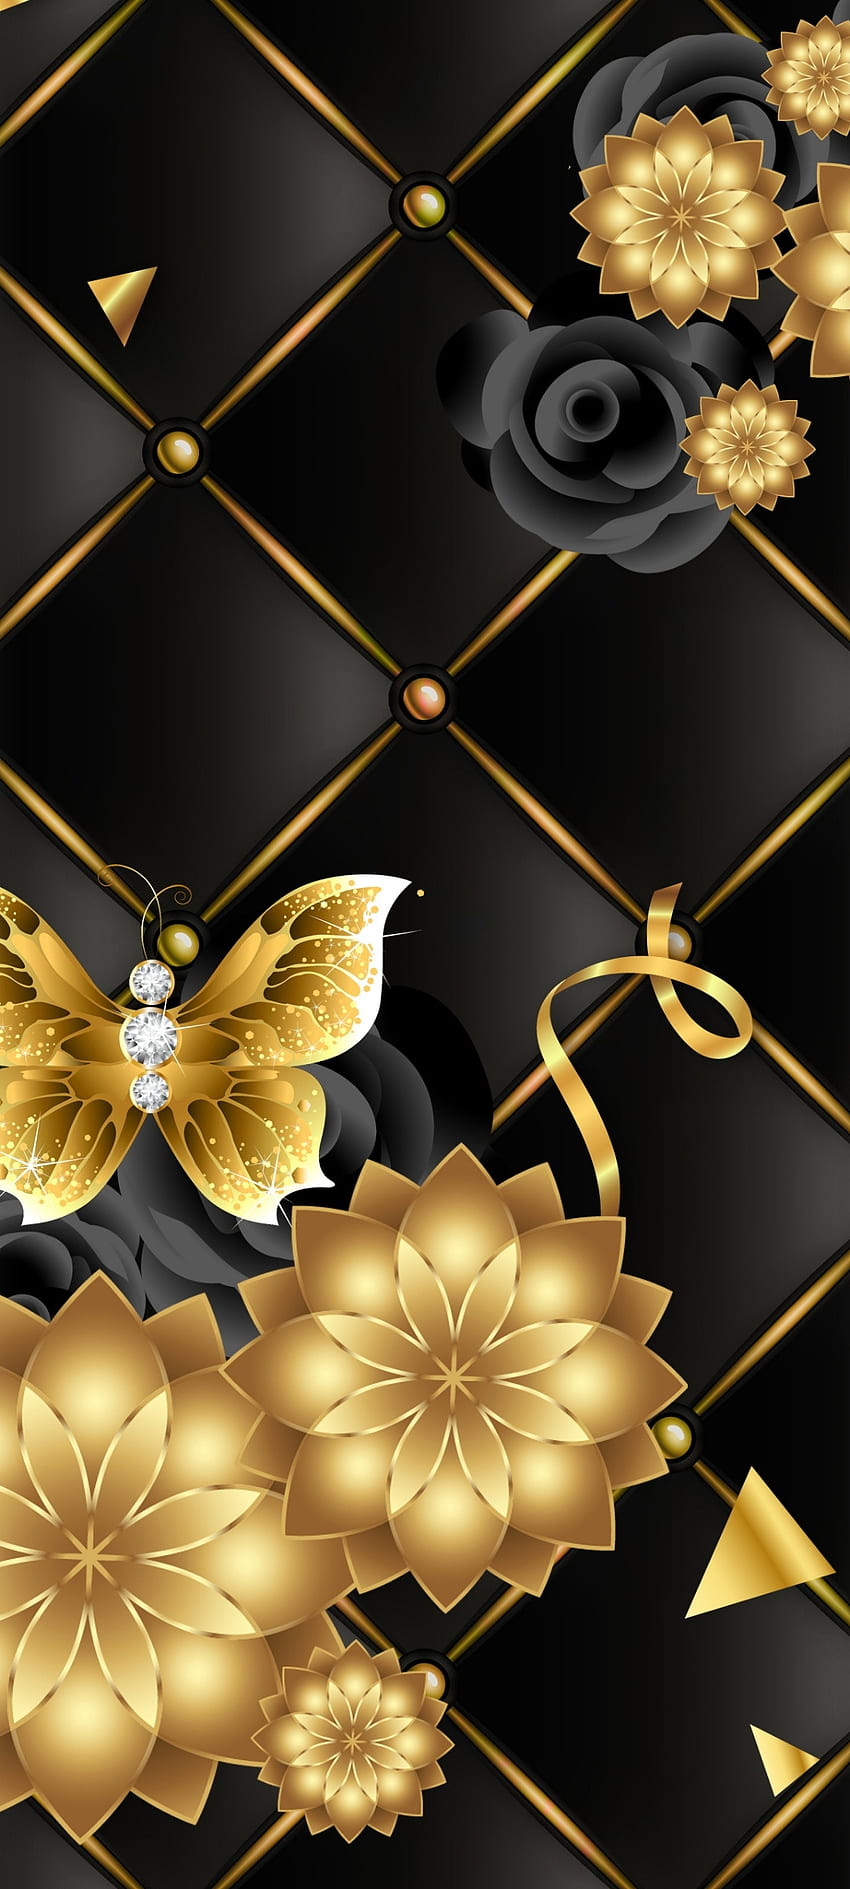 GoldUx mewah, emas, seni, kupu-kupu, mawar wallpaper ponsel HD